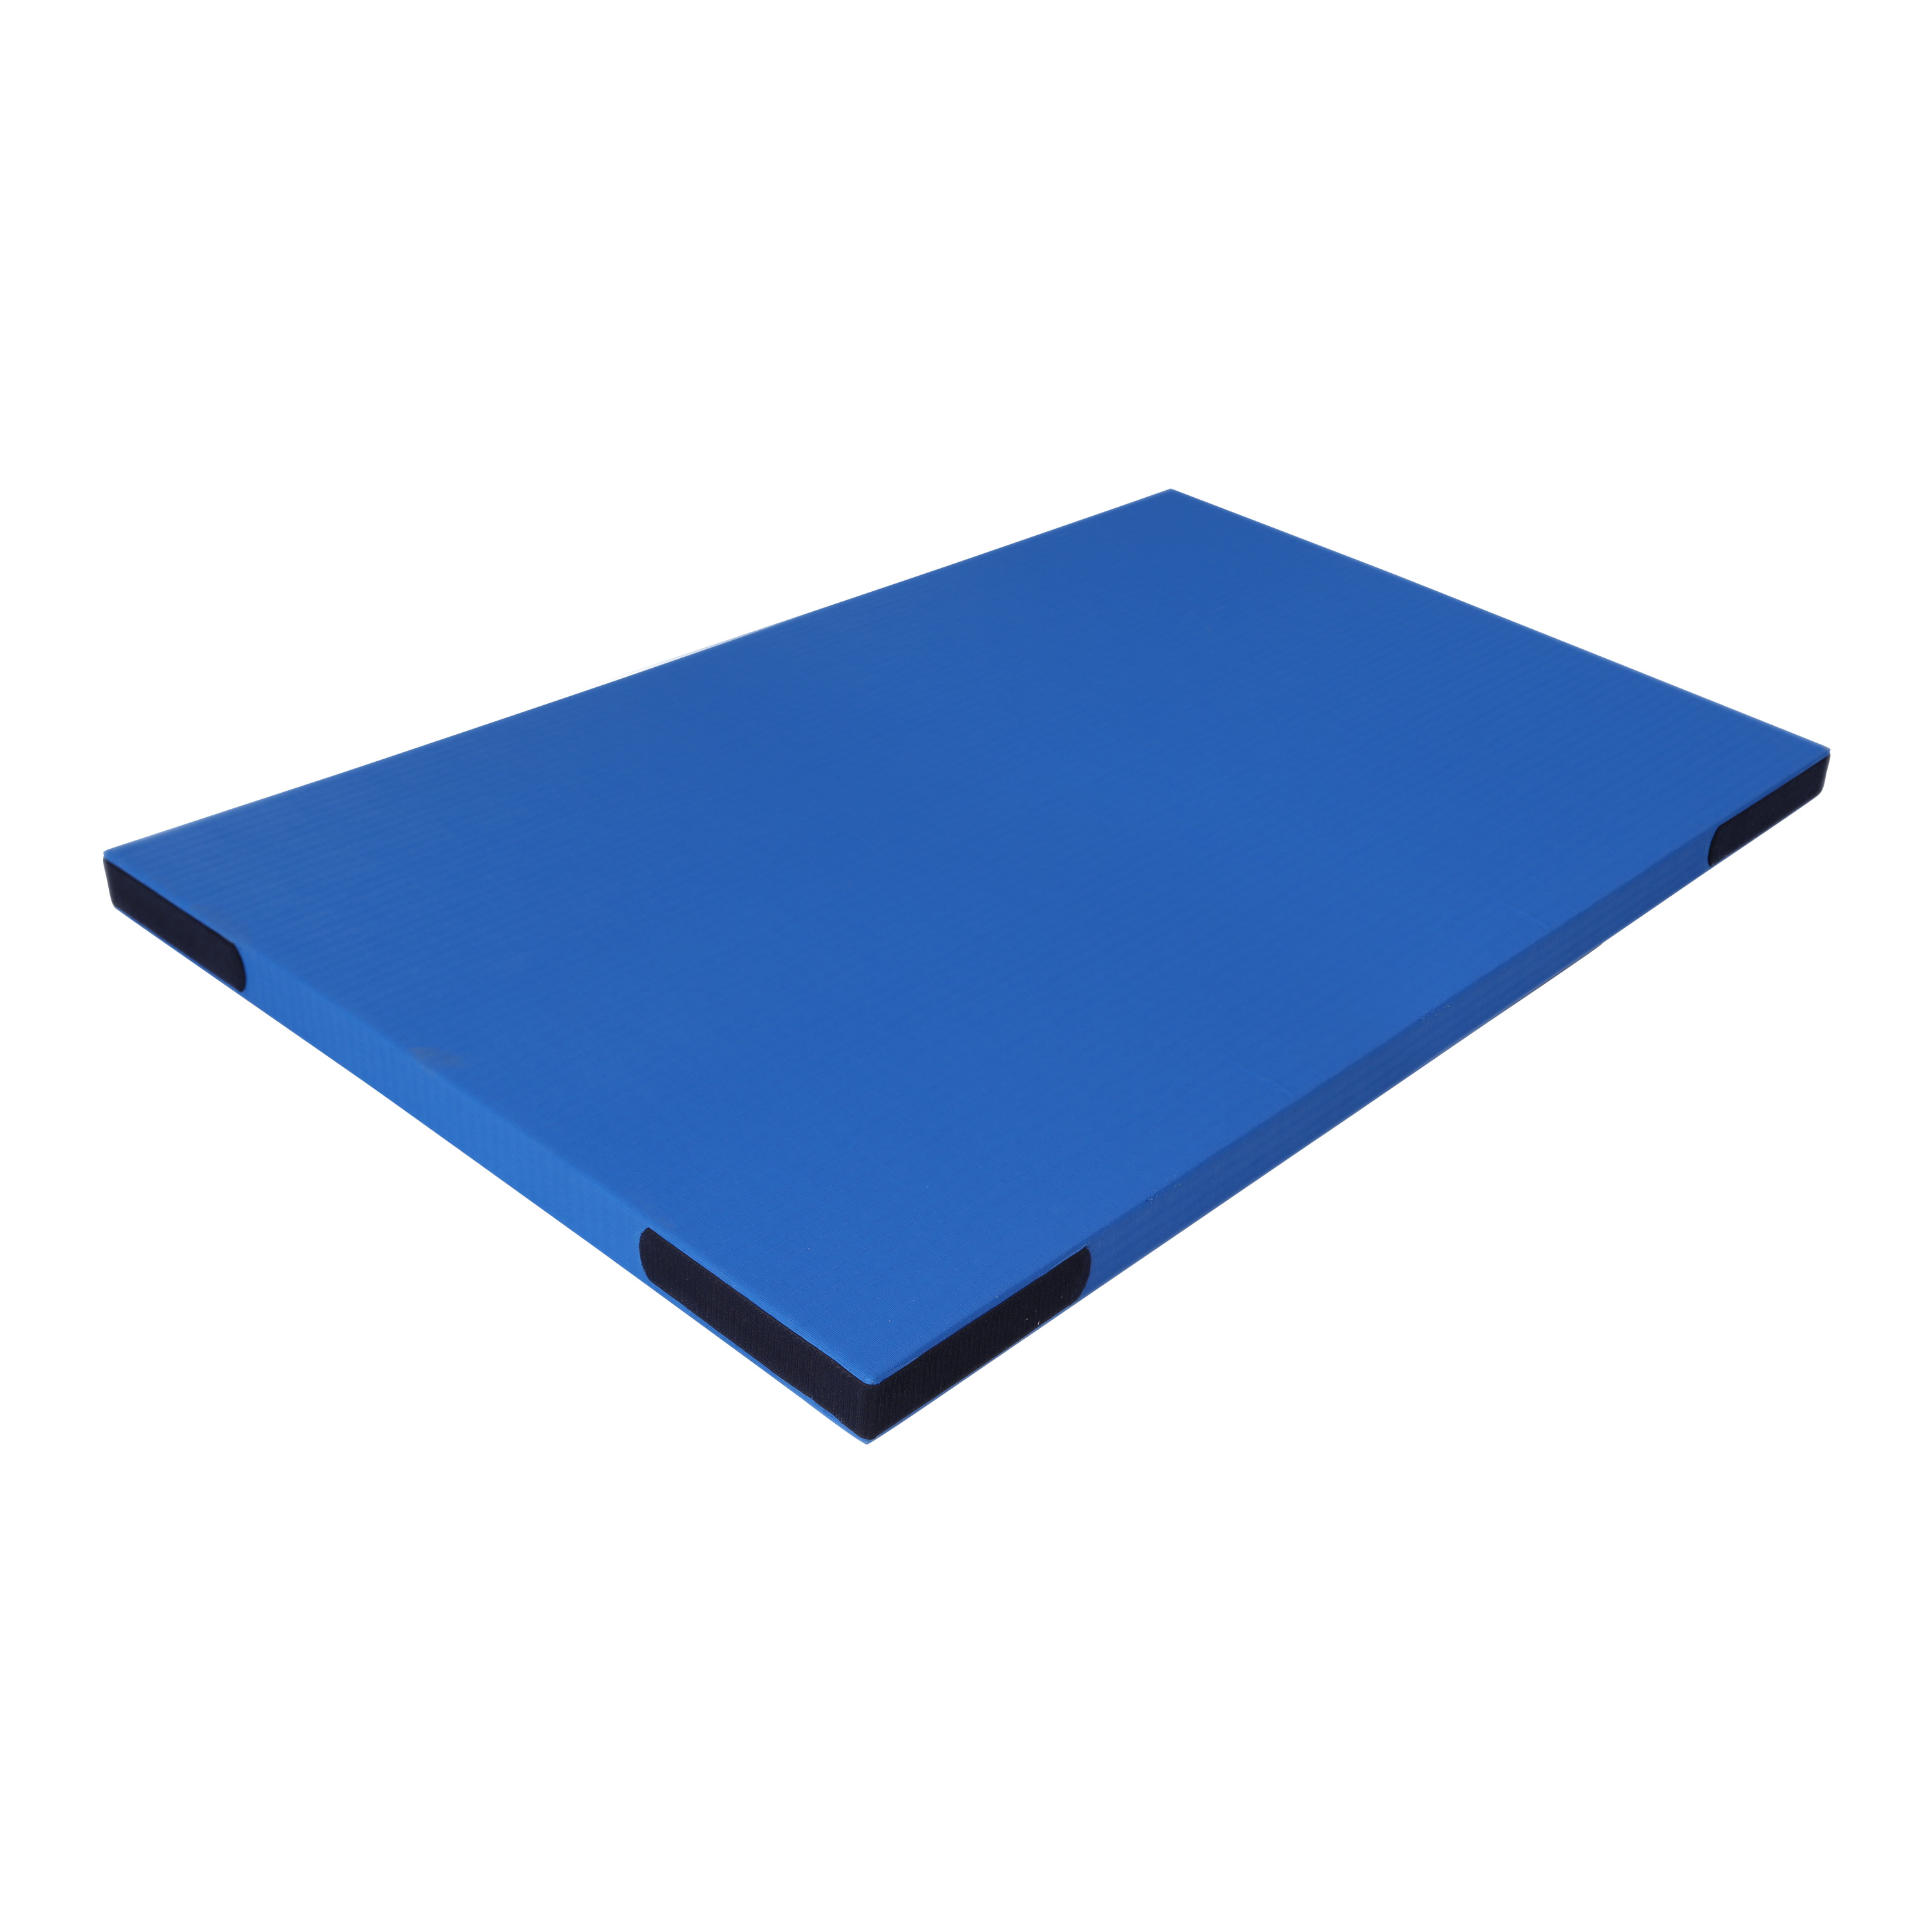 Fallschutzmatte 'Light' blau mit Klett, 200 x 100 cm, 7,4 kg